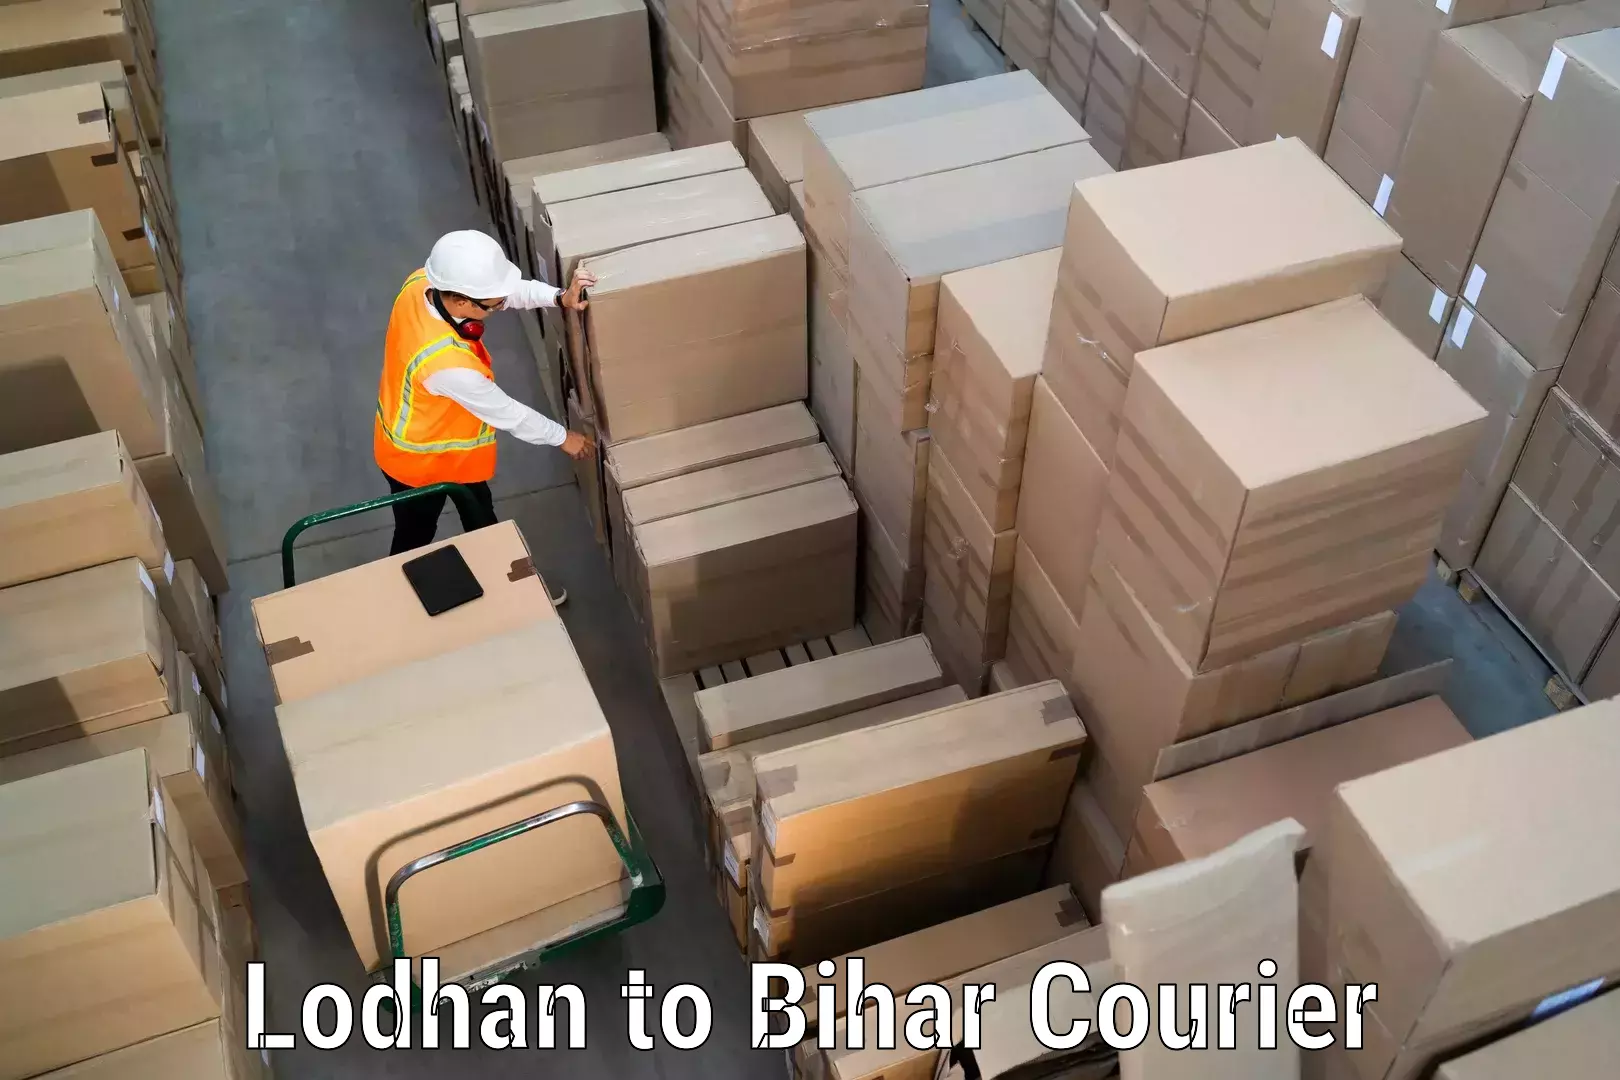 Professional courier handling Lodhan to Thakurganj